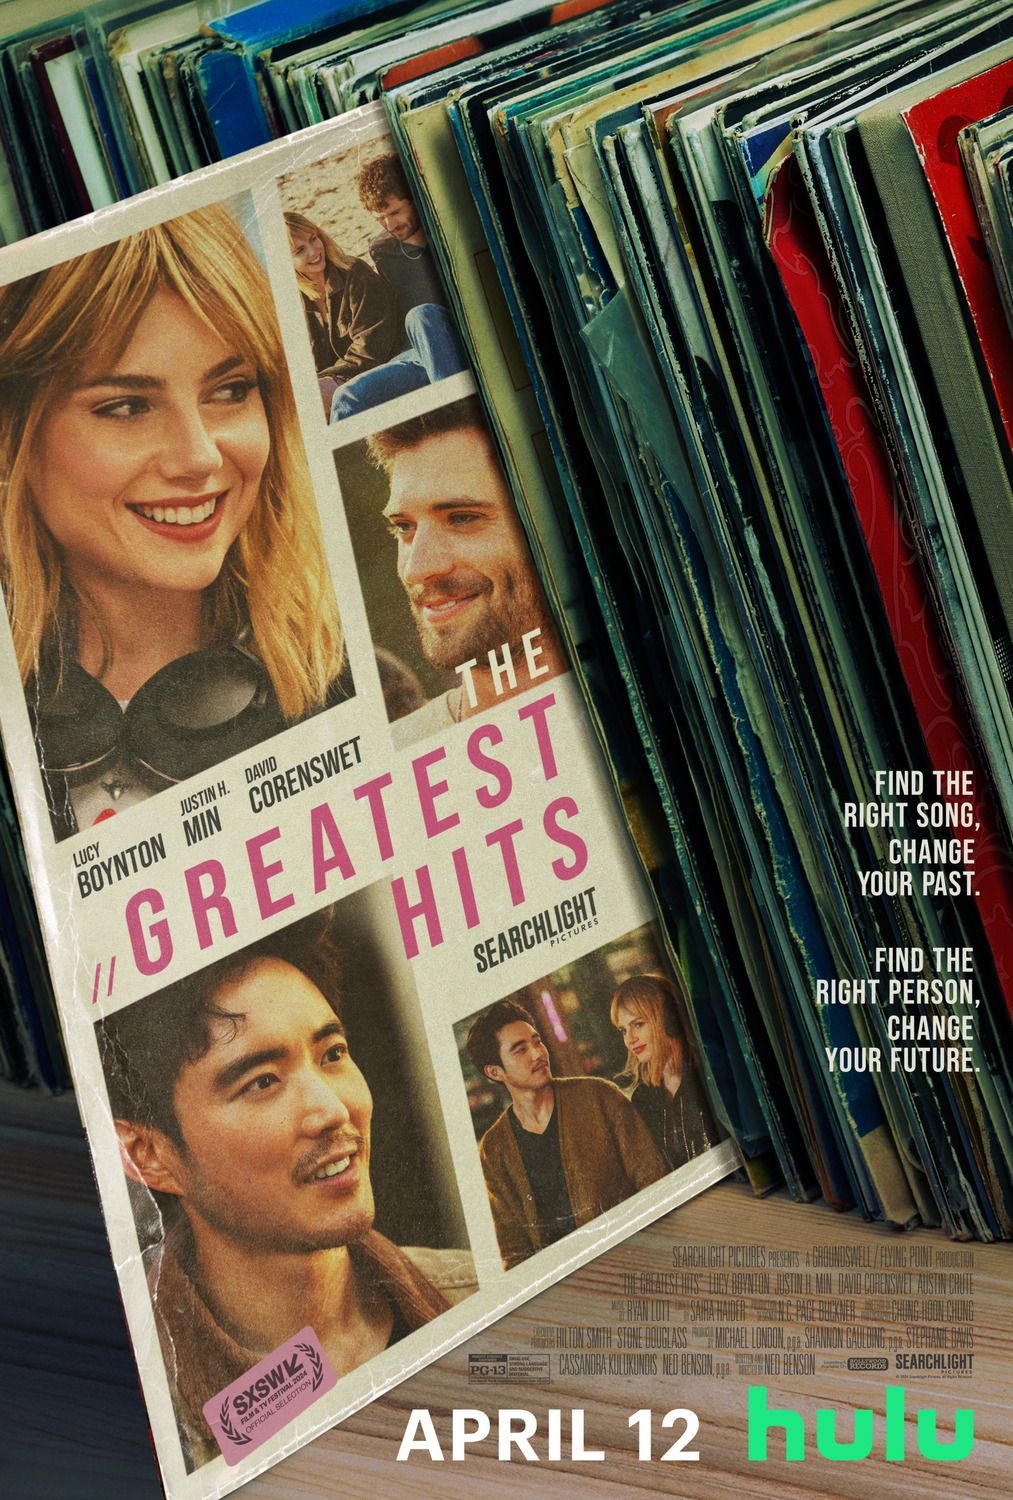 Pôster do filme The Greatest Hits mostrando o elenco na capa de um disco de vinil